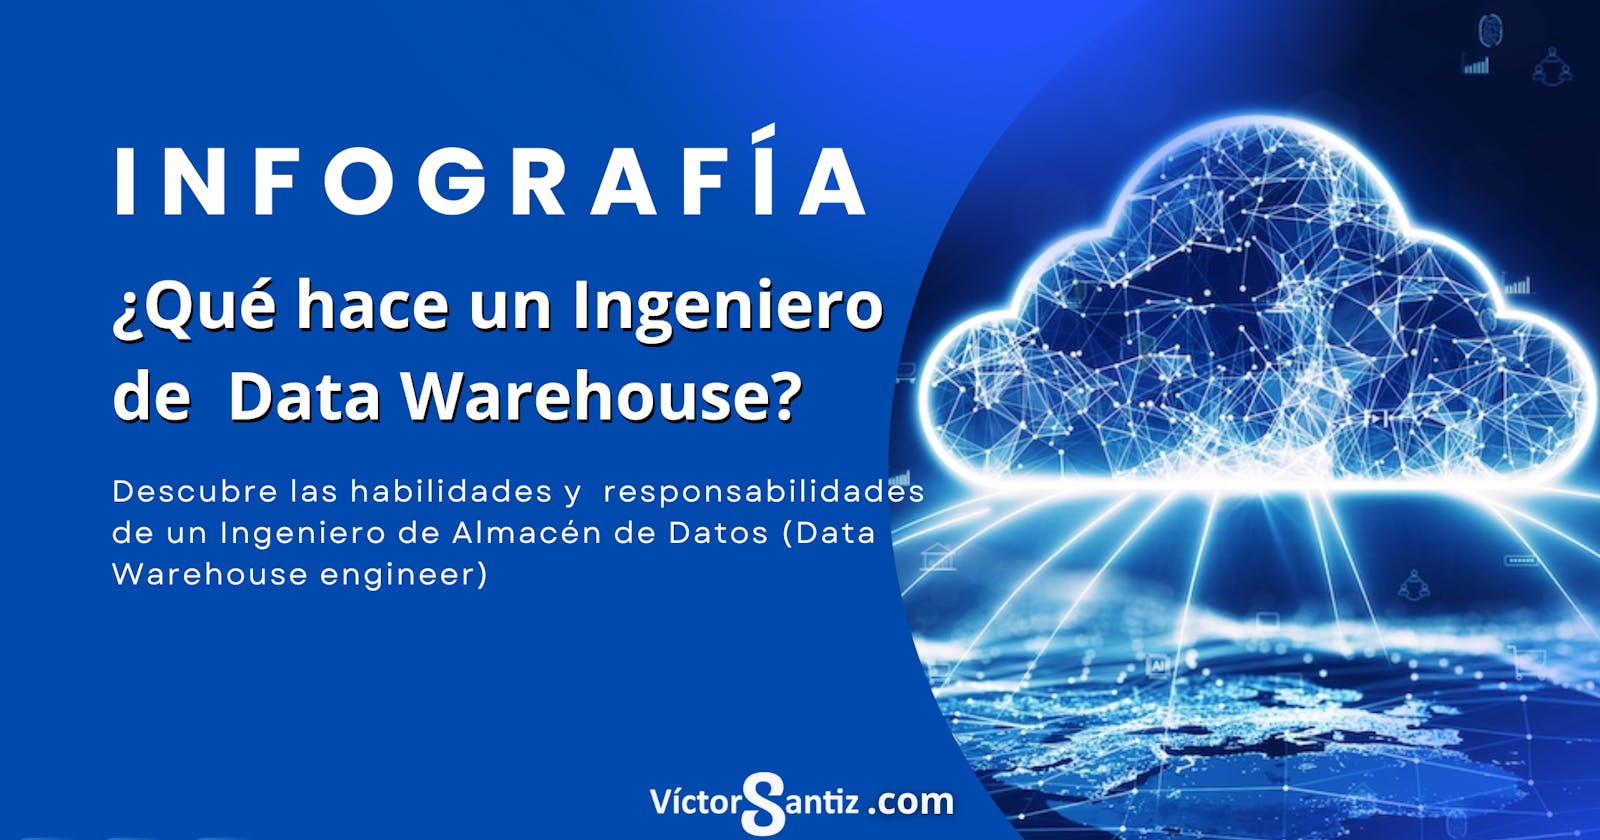 INFOGRAFÍA-¿Qué hace un ingeniero de Almacén de Datos (Data warehouse Engineer)?